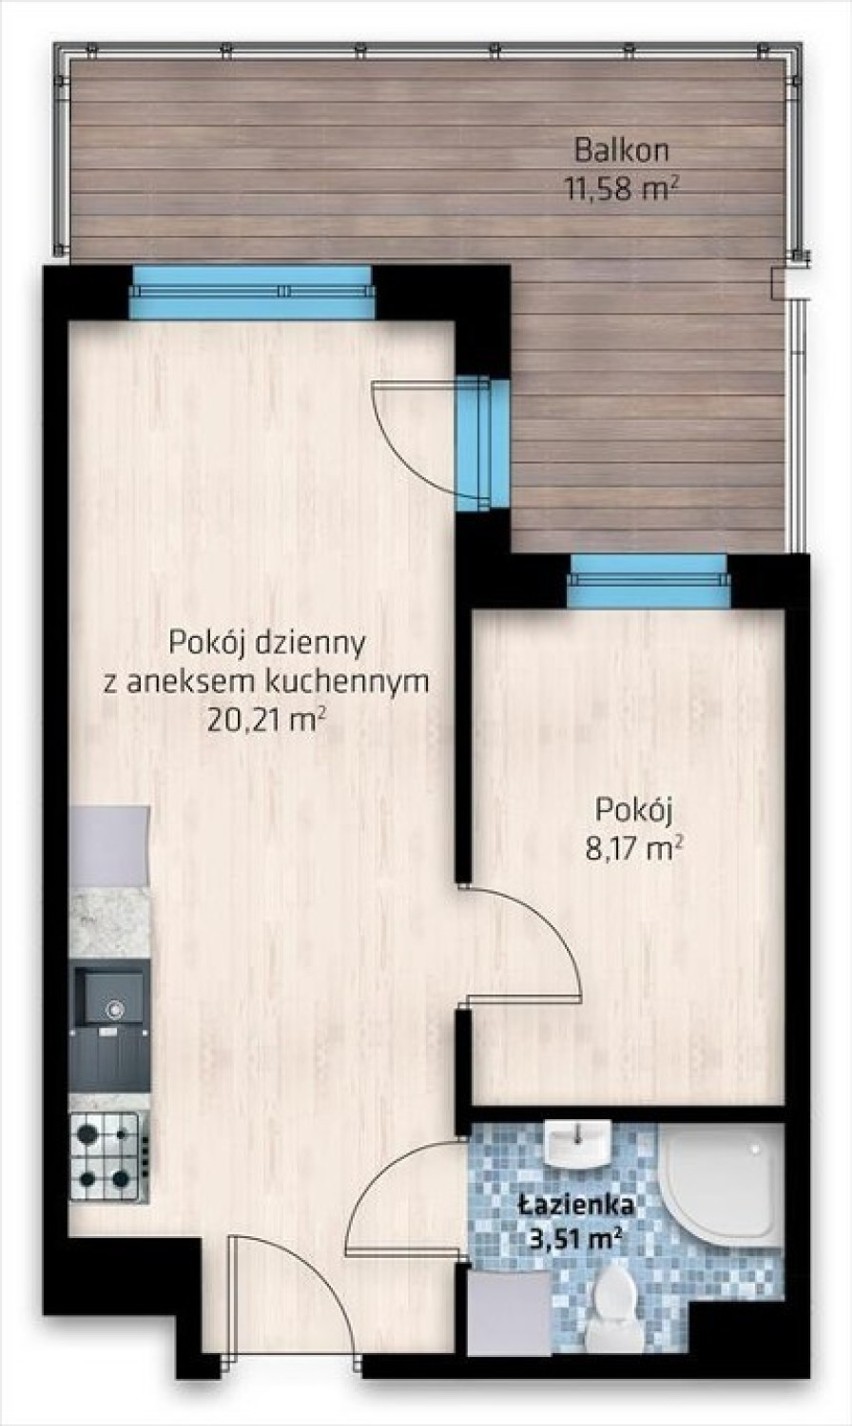 Cena: 189 000 zł (5 906 zł/m2)

Powierzchnia: 32 m2
Piętro:...